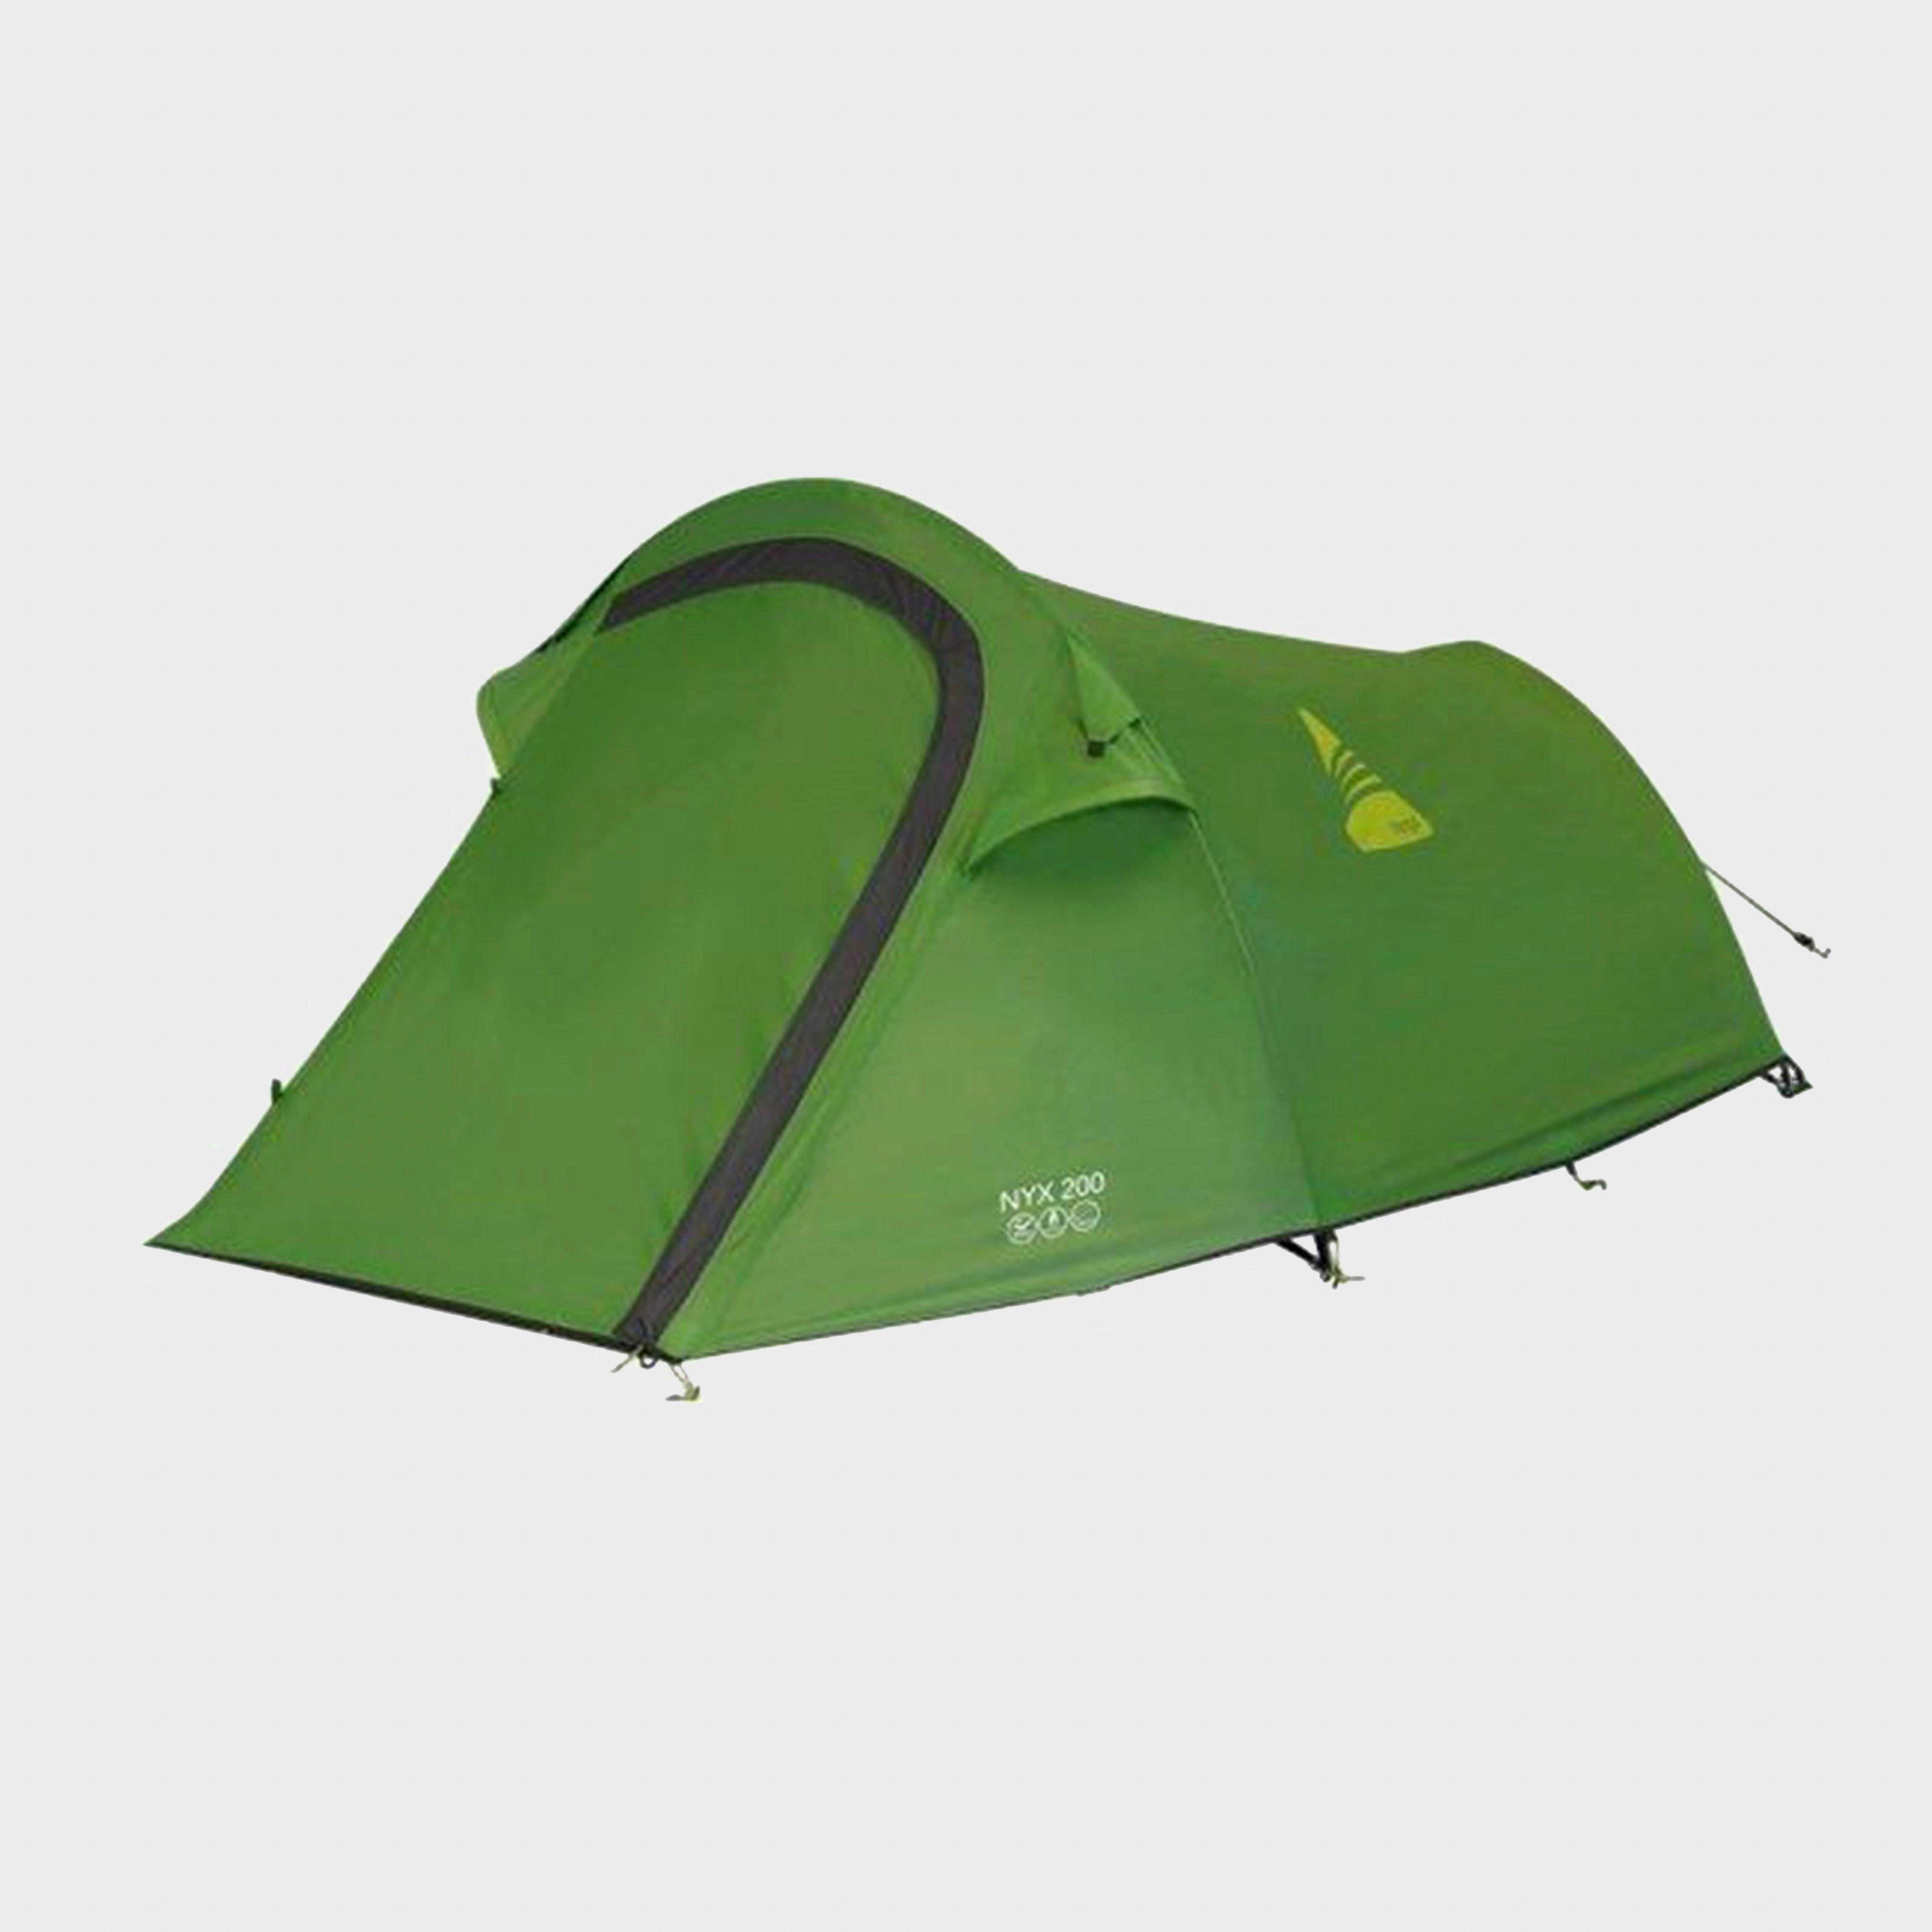  VANGO Nyx 200 Tent, Green